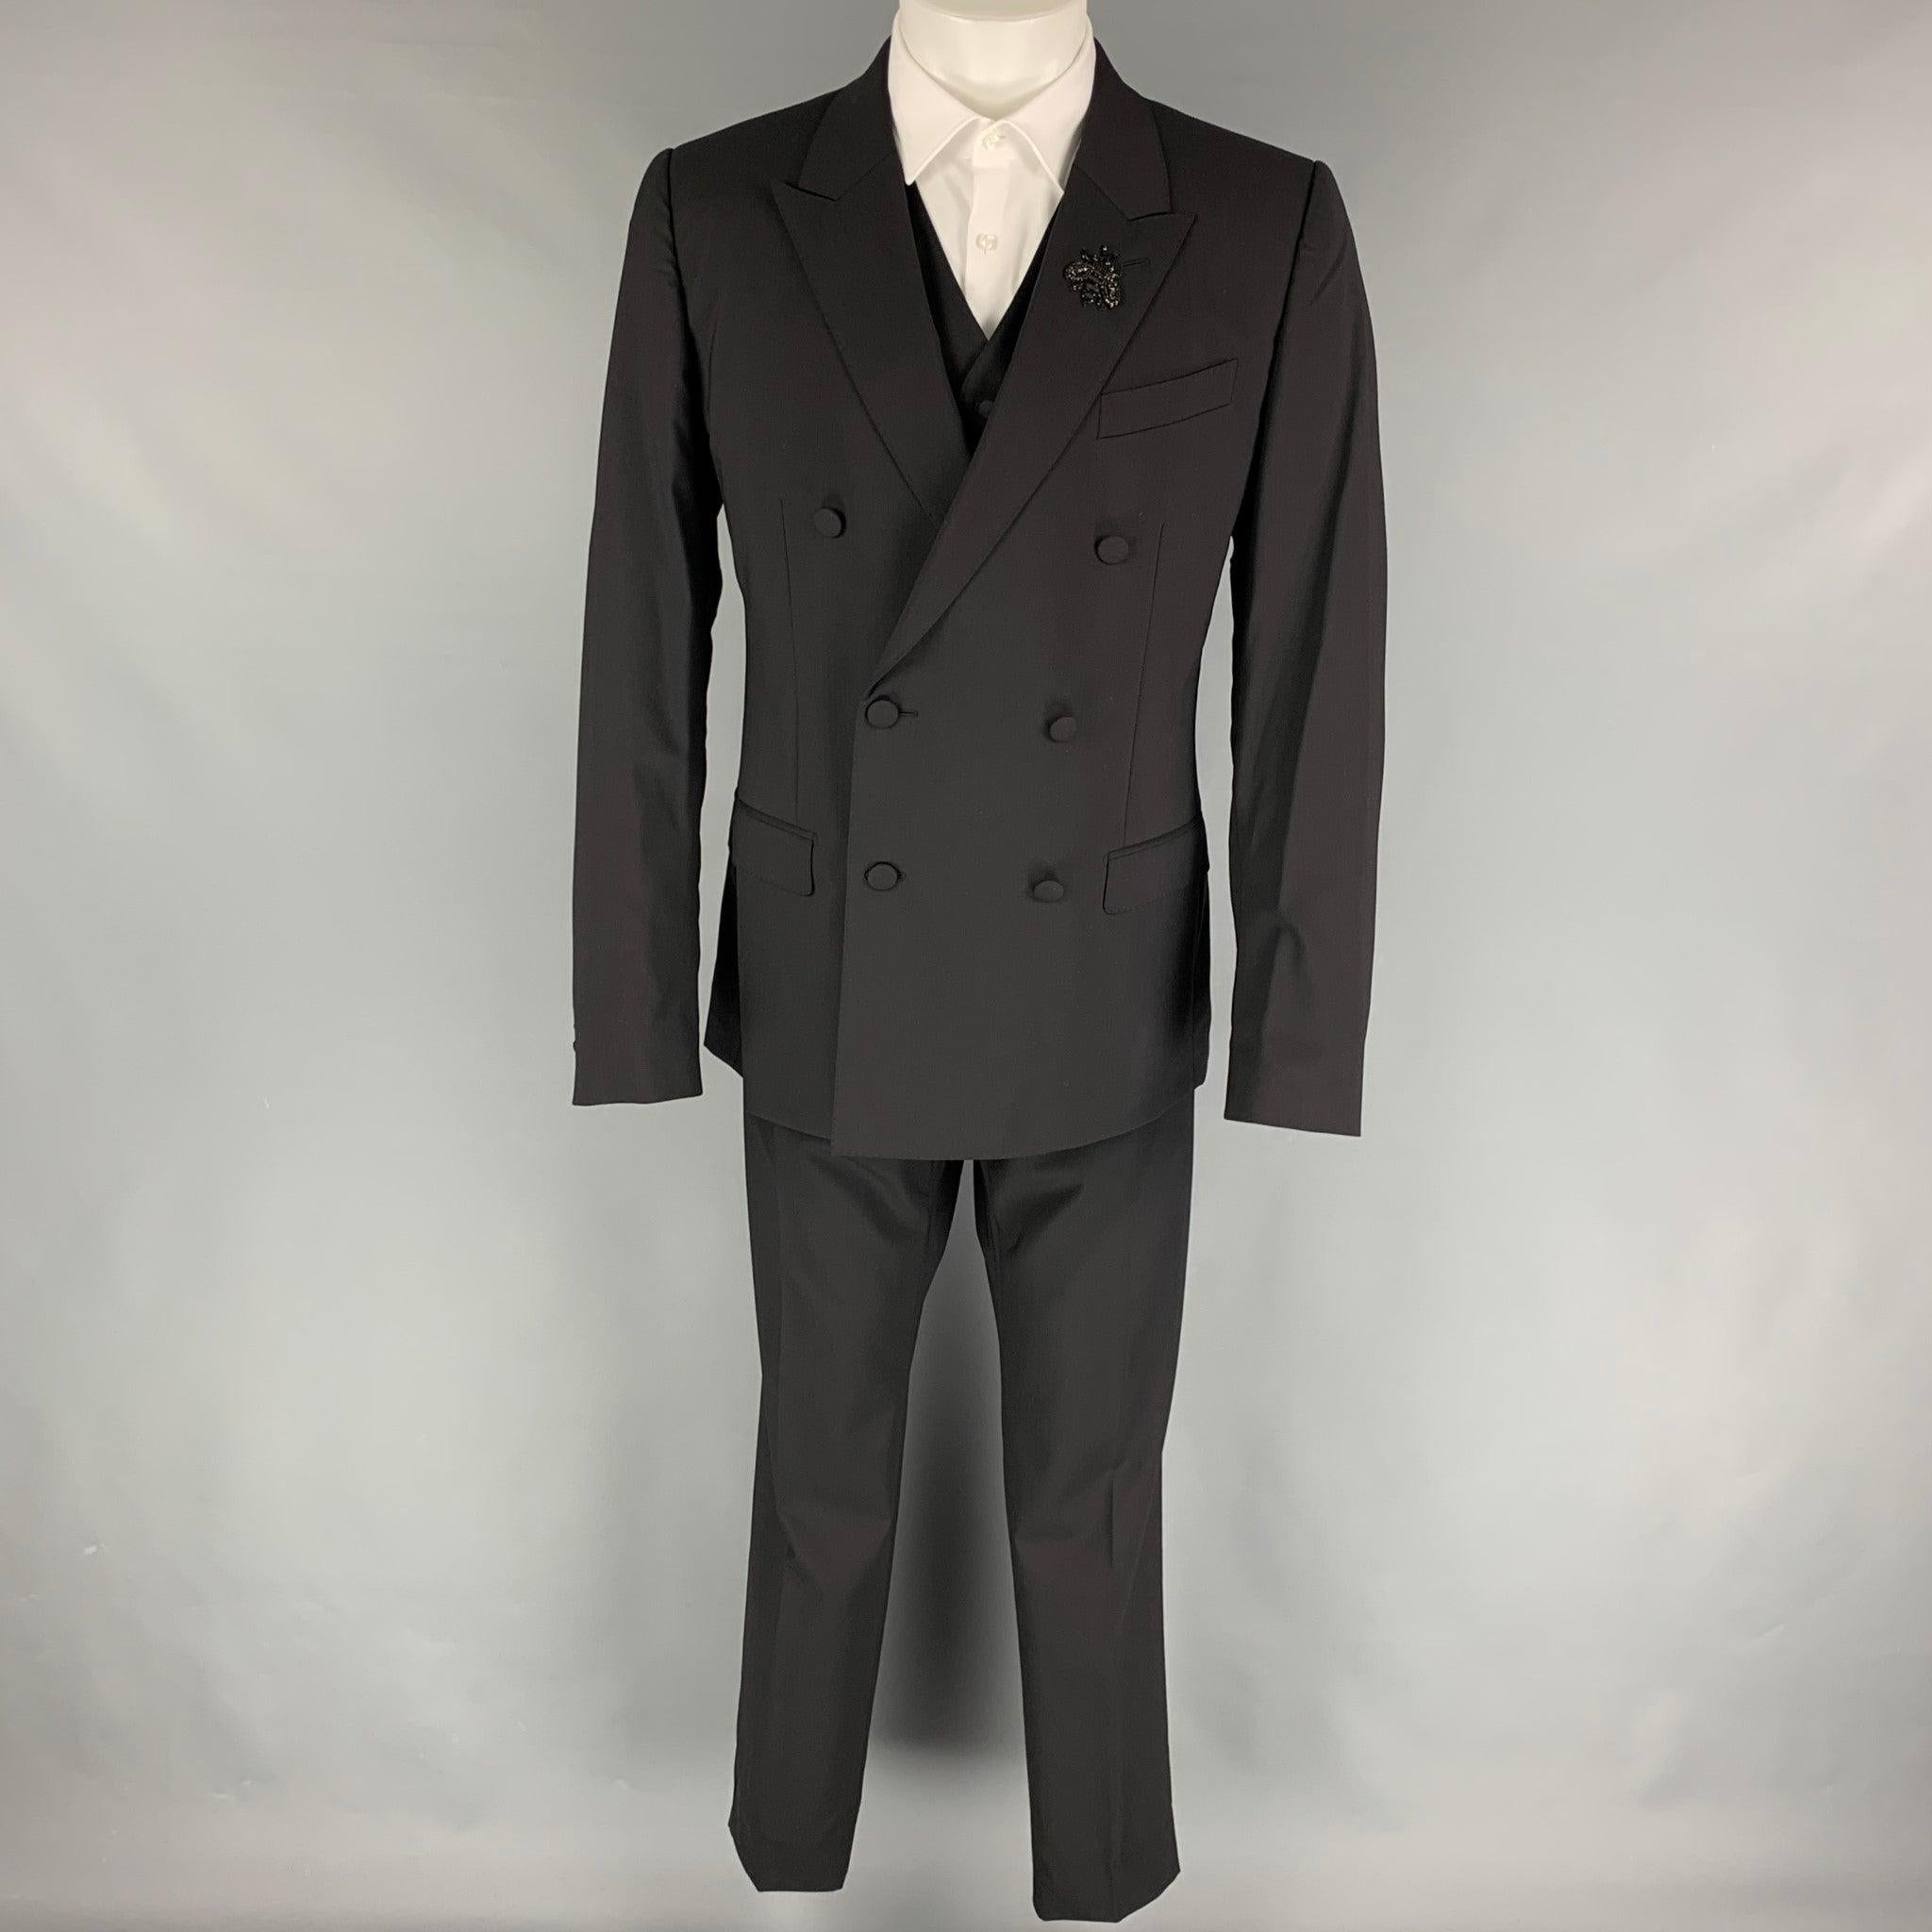 Le costume 3 pièces 'Martini' de DOLCE & GABBANA est en laine vierge noire avec doublure intégrale et comprend un manteau sport à double boutonnage avec revers en pointe, orné de cristaux perlés, et une veste en cuir.
 un gilet assorti et un